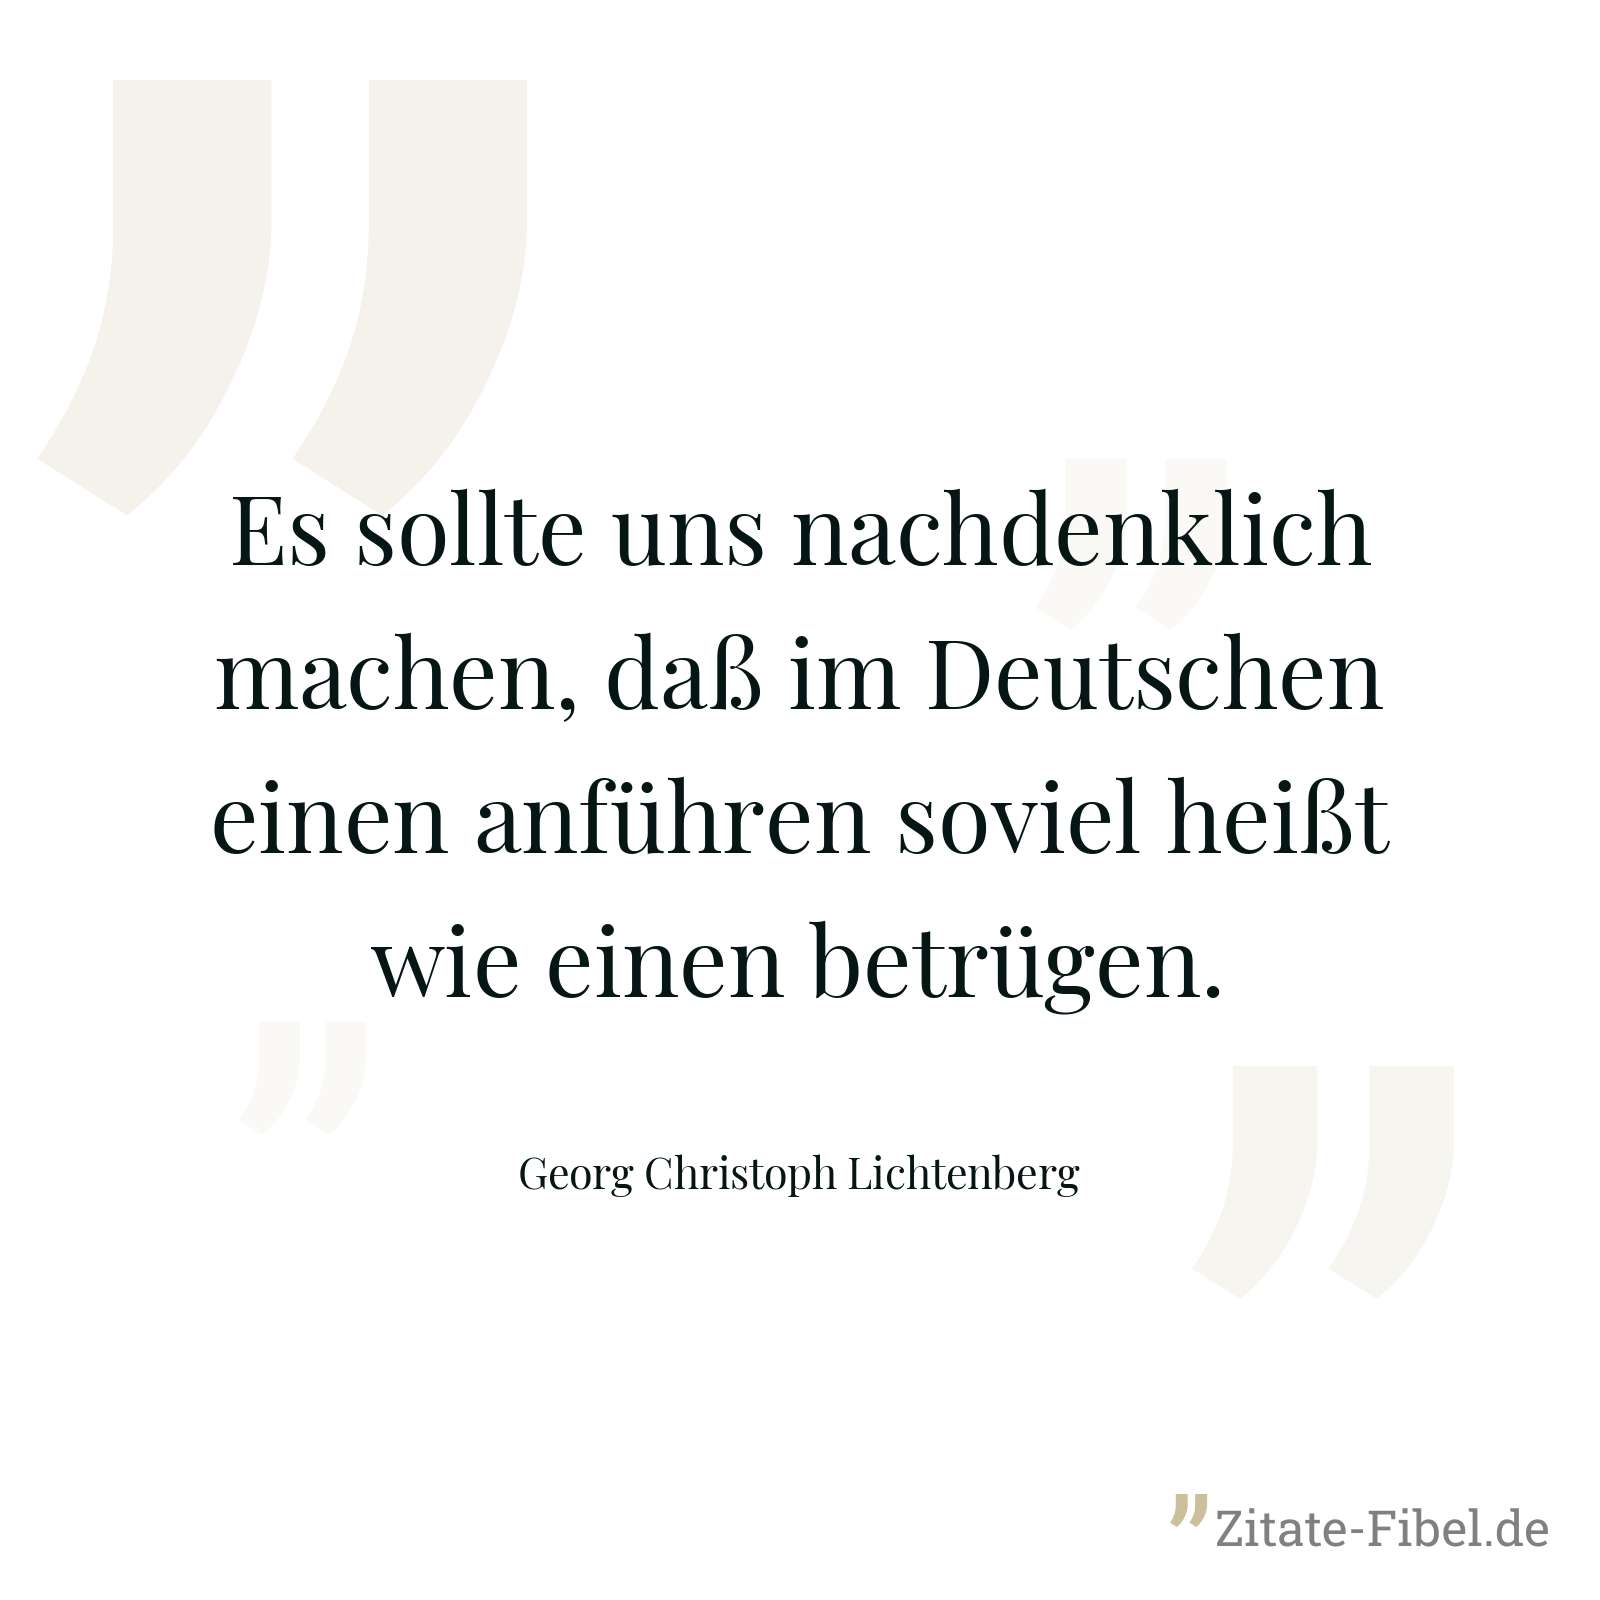 Es sollte uns nachdenklich machen, daß im Deutschen einen anführen soviel heißt wie einen betrügen. - Georg Christoph Lichtenberg